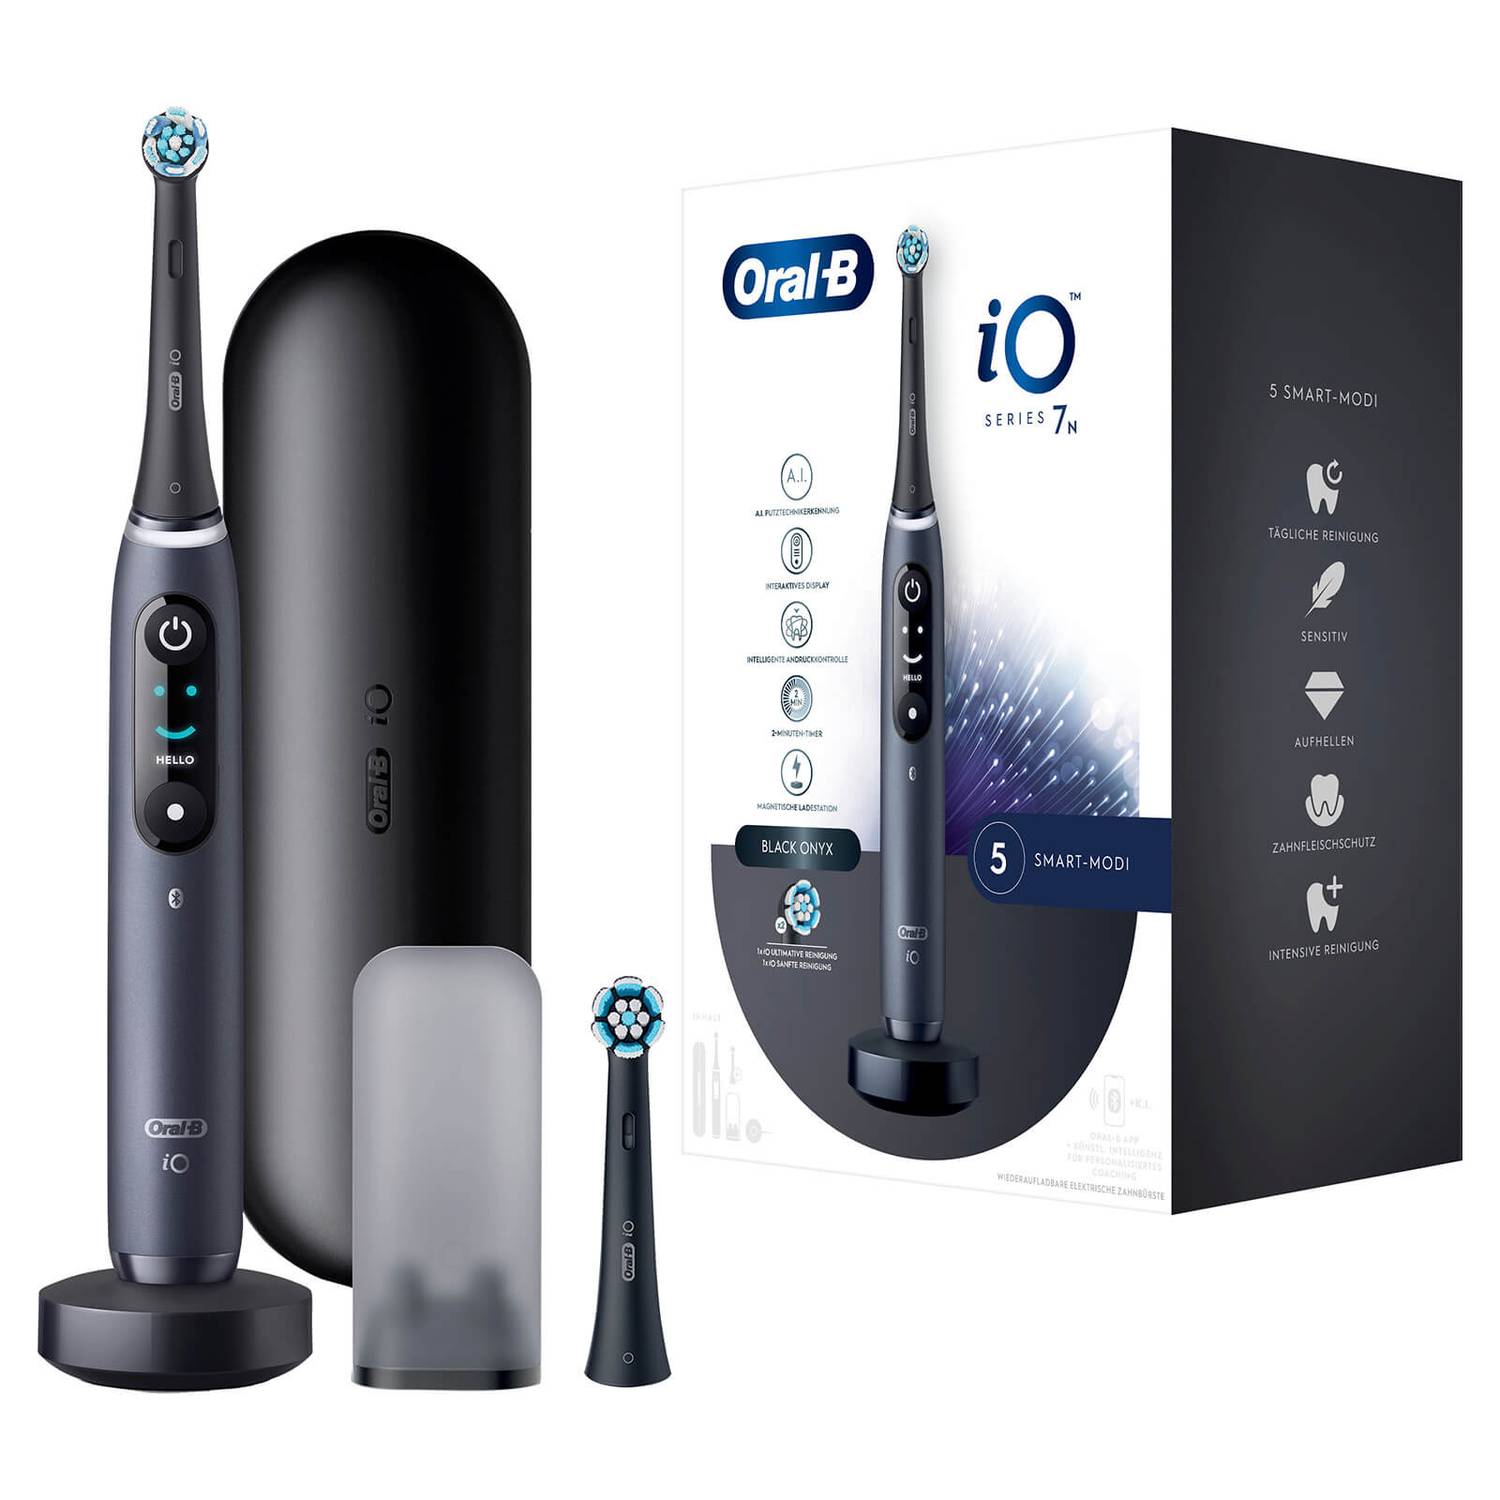 Oral-B iO 7N Elektrische Zahnbürste mit Magnet-Technologie, schwarz, black  Onyx | Braun Ersatzteile, Zubehör, Neugeräte online kaufen